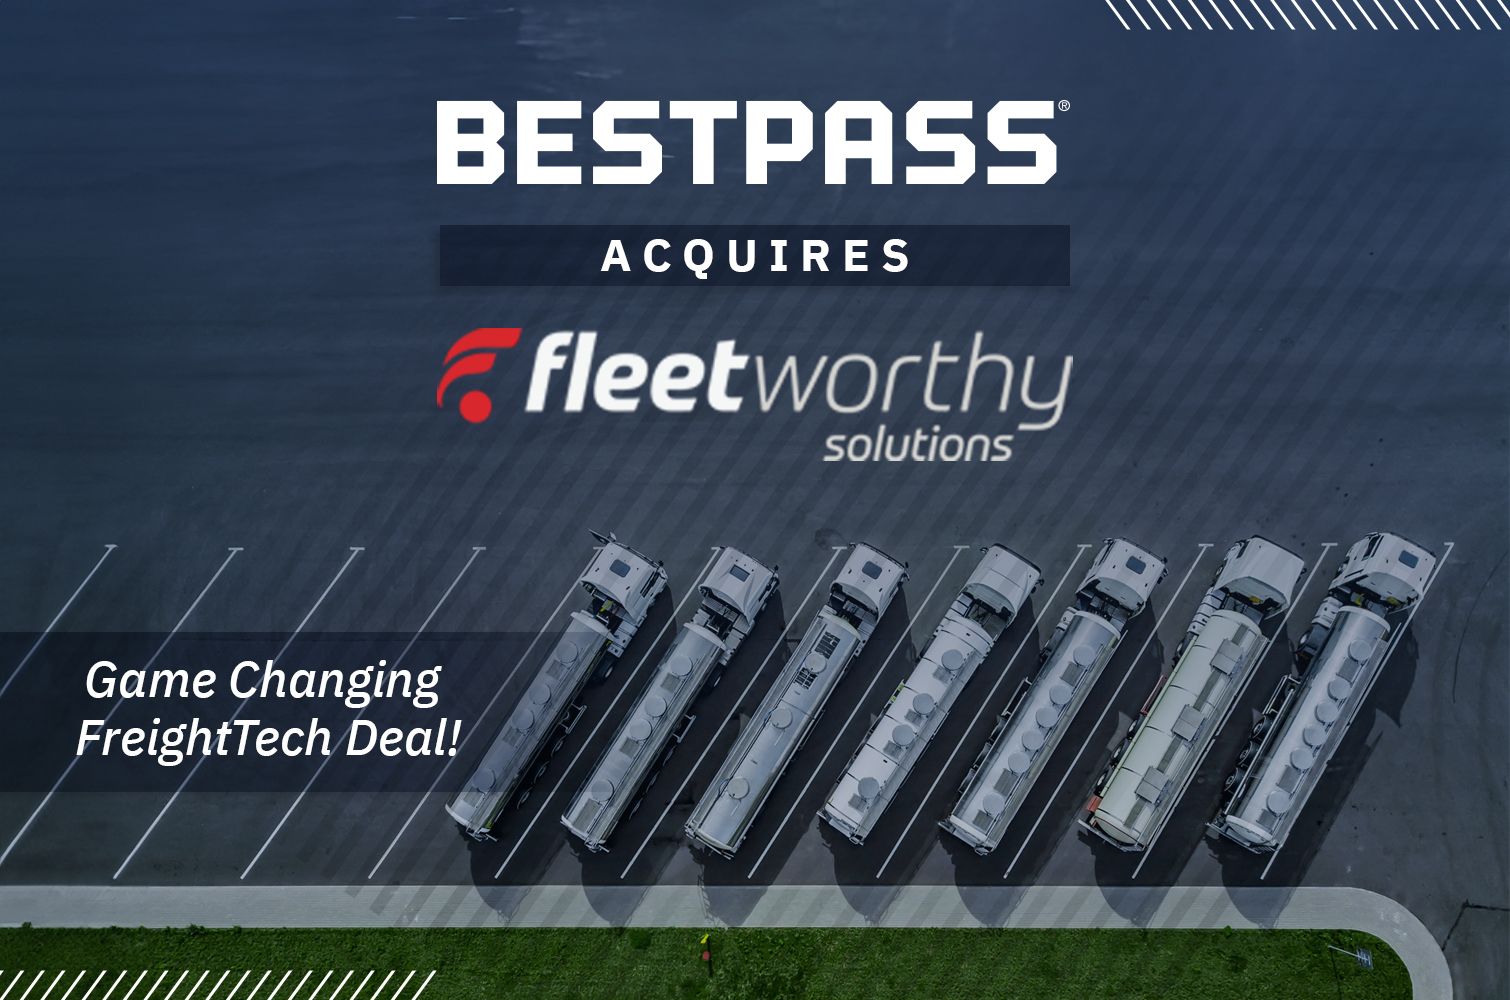 Bestpass Acquires Fleetworthy Solutions